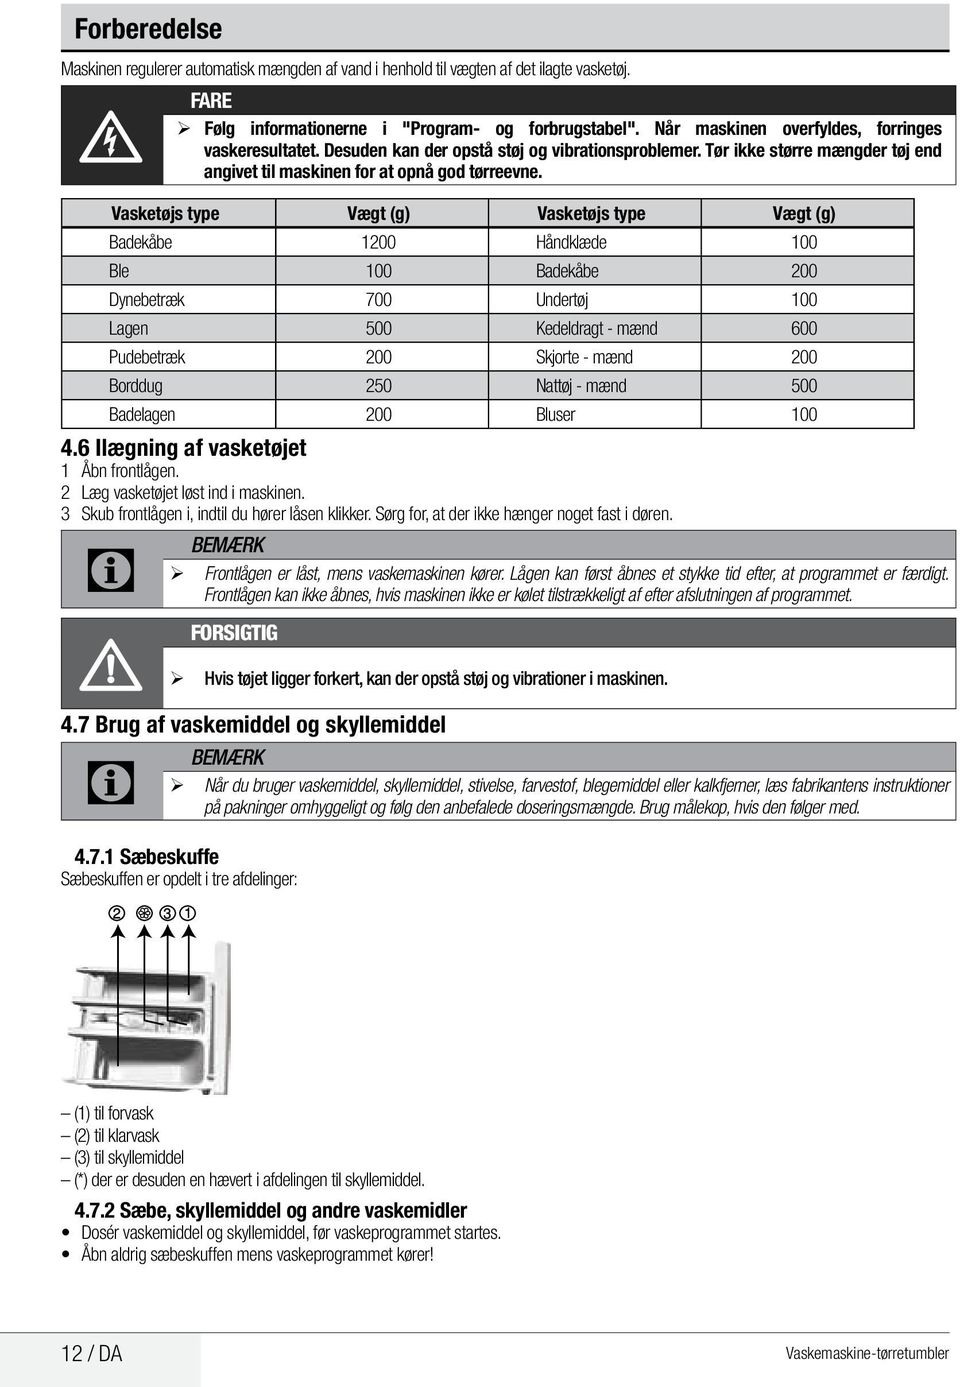 Vaskemaskinetørretumbler - PDF Gratis download